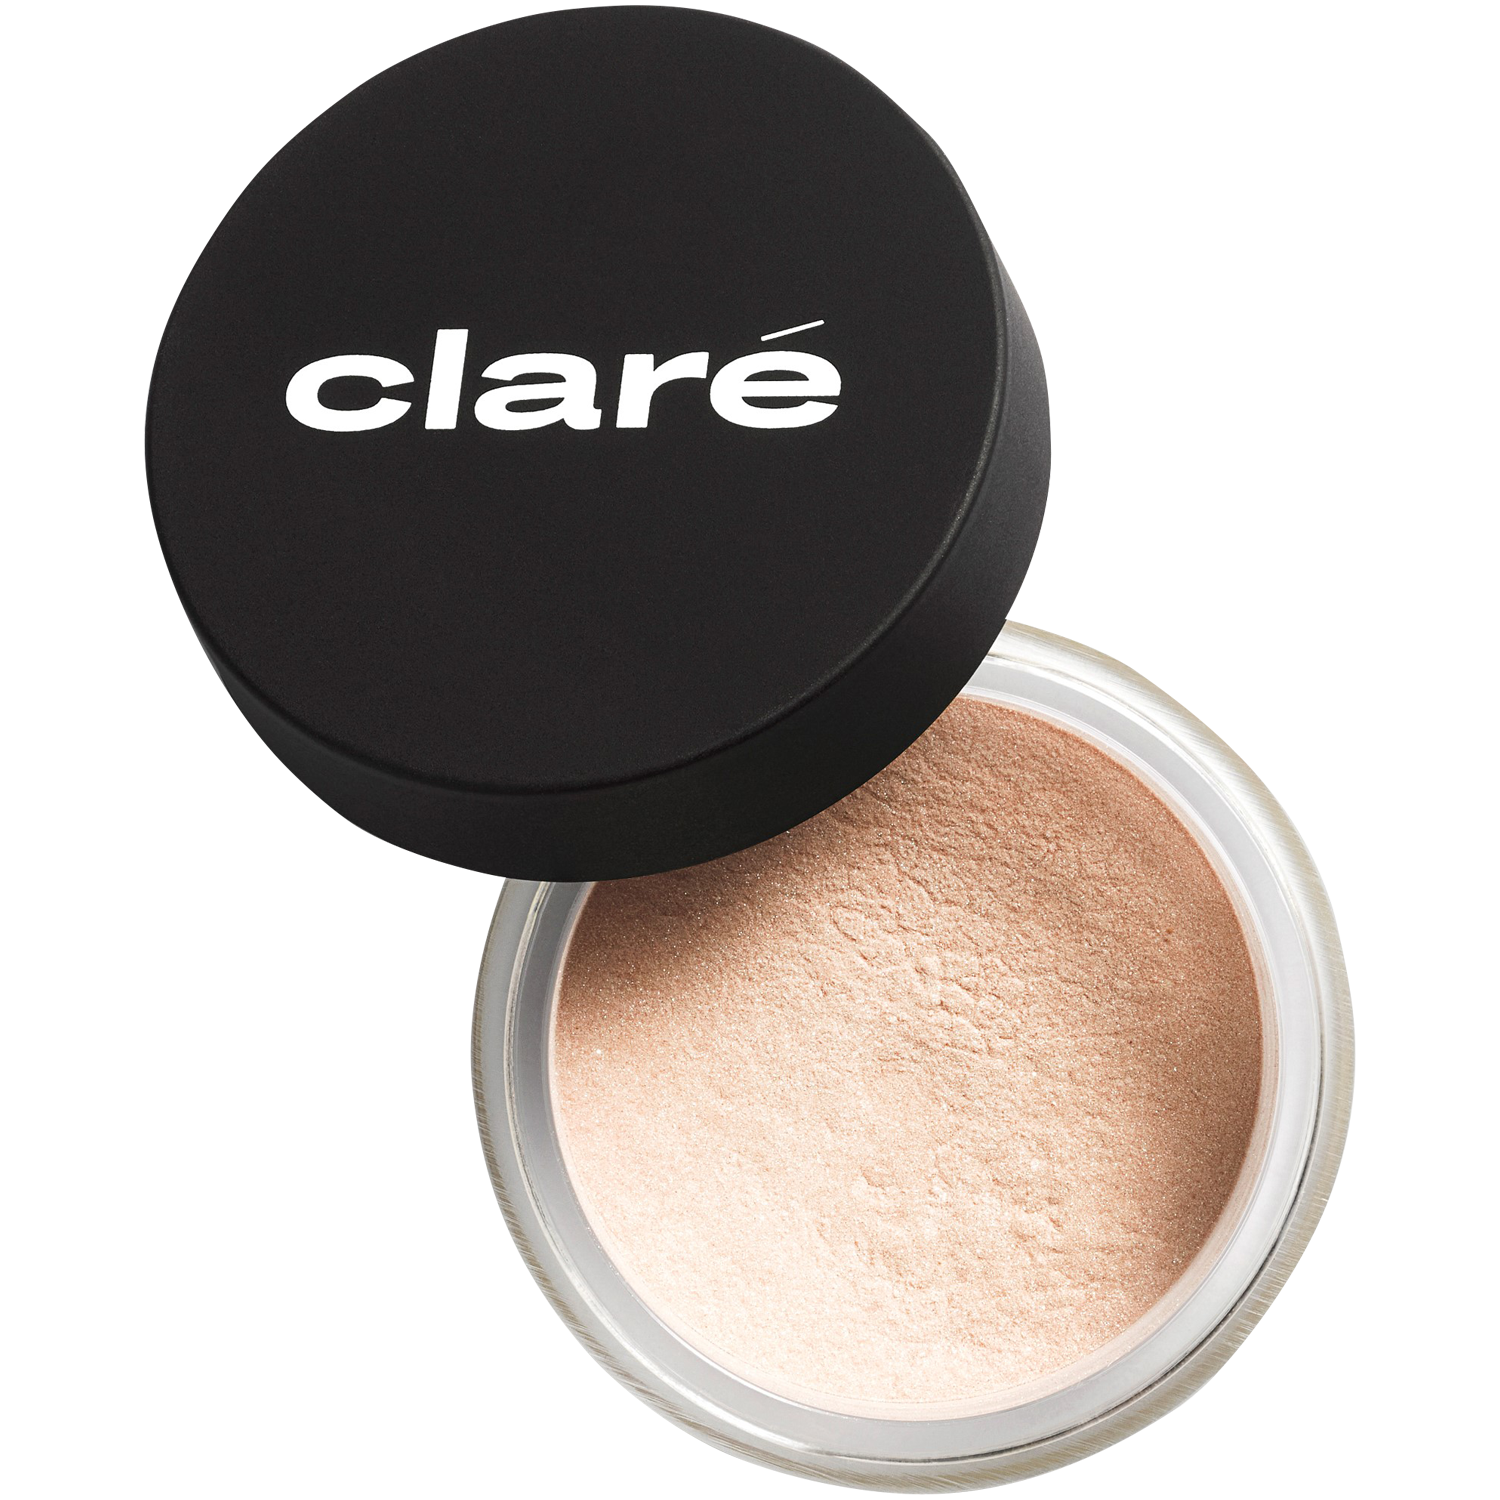 Атласные тени для век кремового телесного цвета 885 Claré Clare Makeup, 1,2 гр атласные тени для век холодного телесного цвета 900 claré clare makeup 1 гр